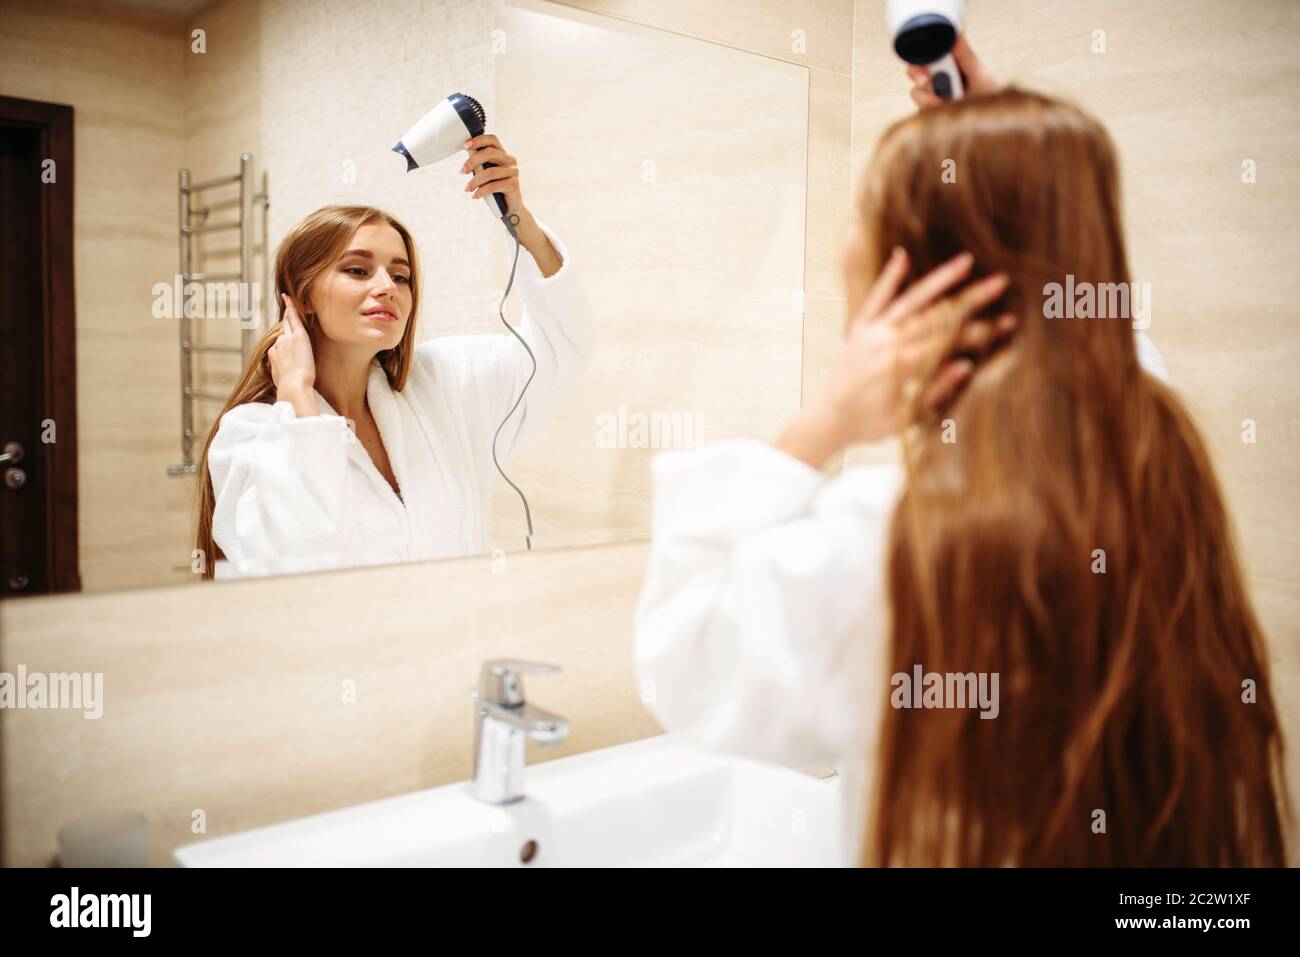 Schöne Frau im Bademantel Haare trocknen mit Trockner gegen Spiegel im Bad,  Hygiene, Schönheitspflege Stockfotografie - Alamy